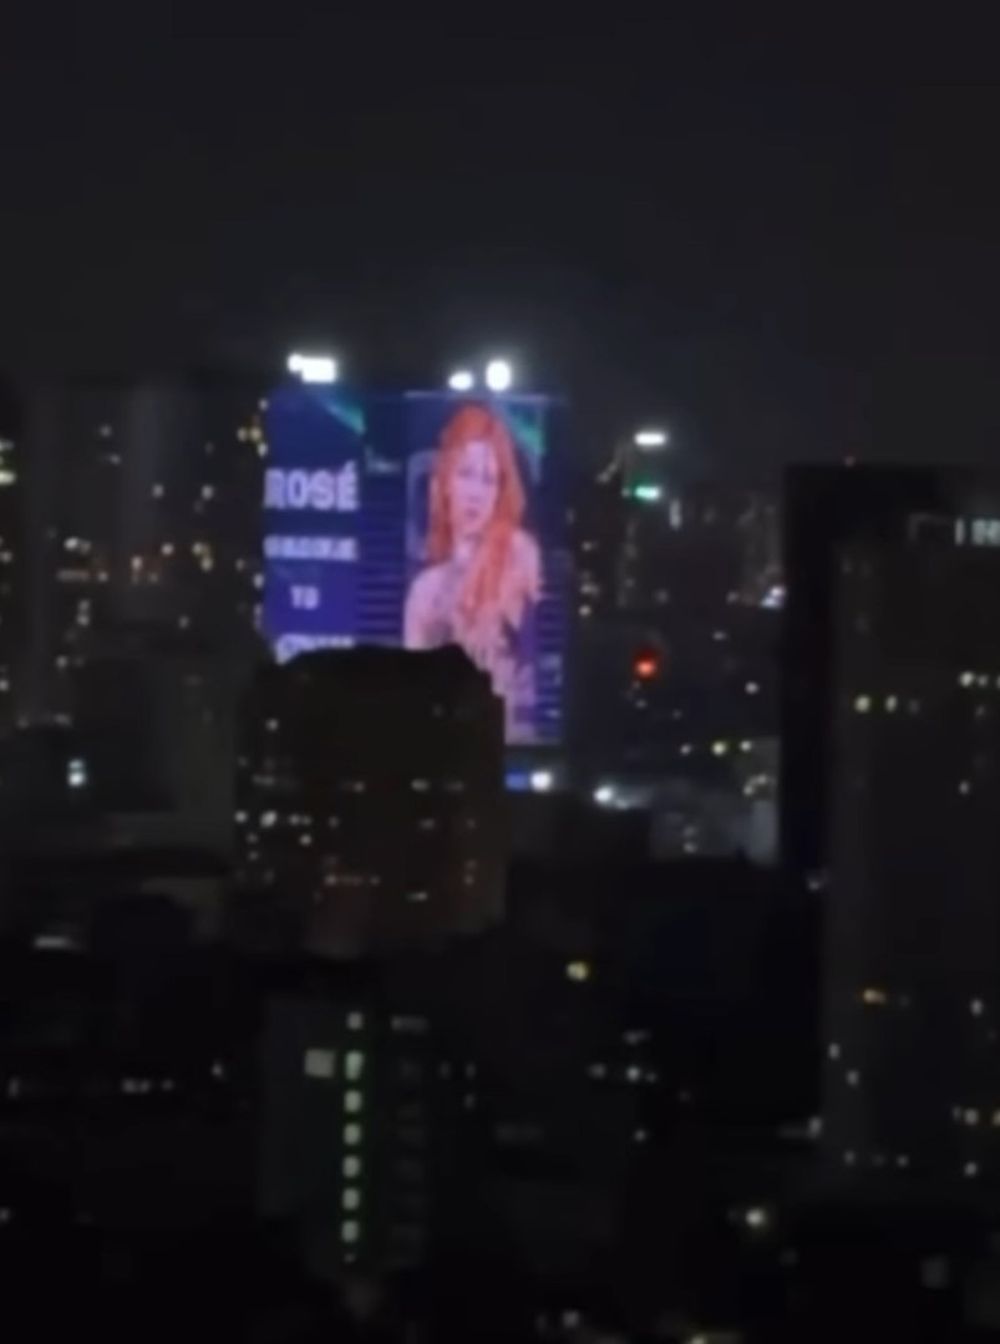 Quảng cáo LED Building chào đón Rosé (BlackPink) đến Việt Nam